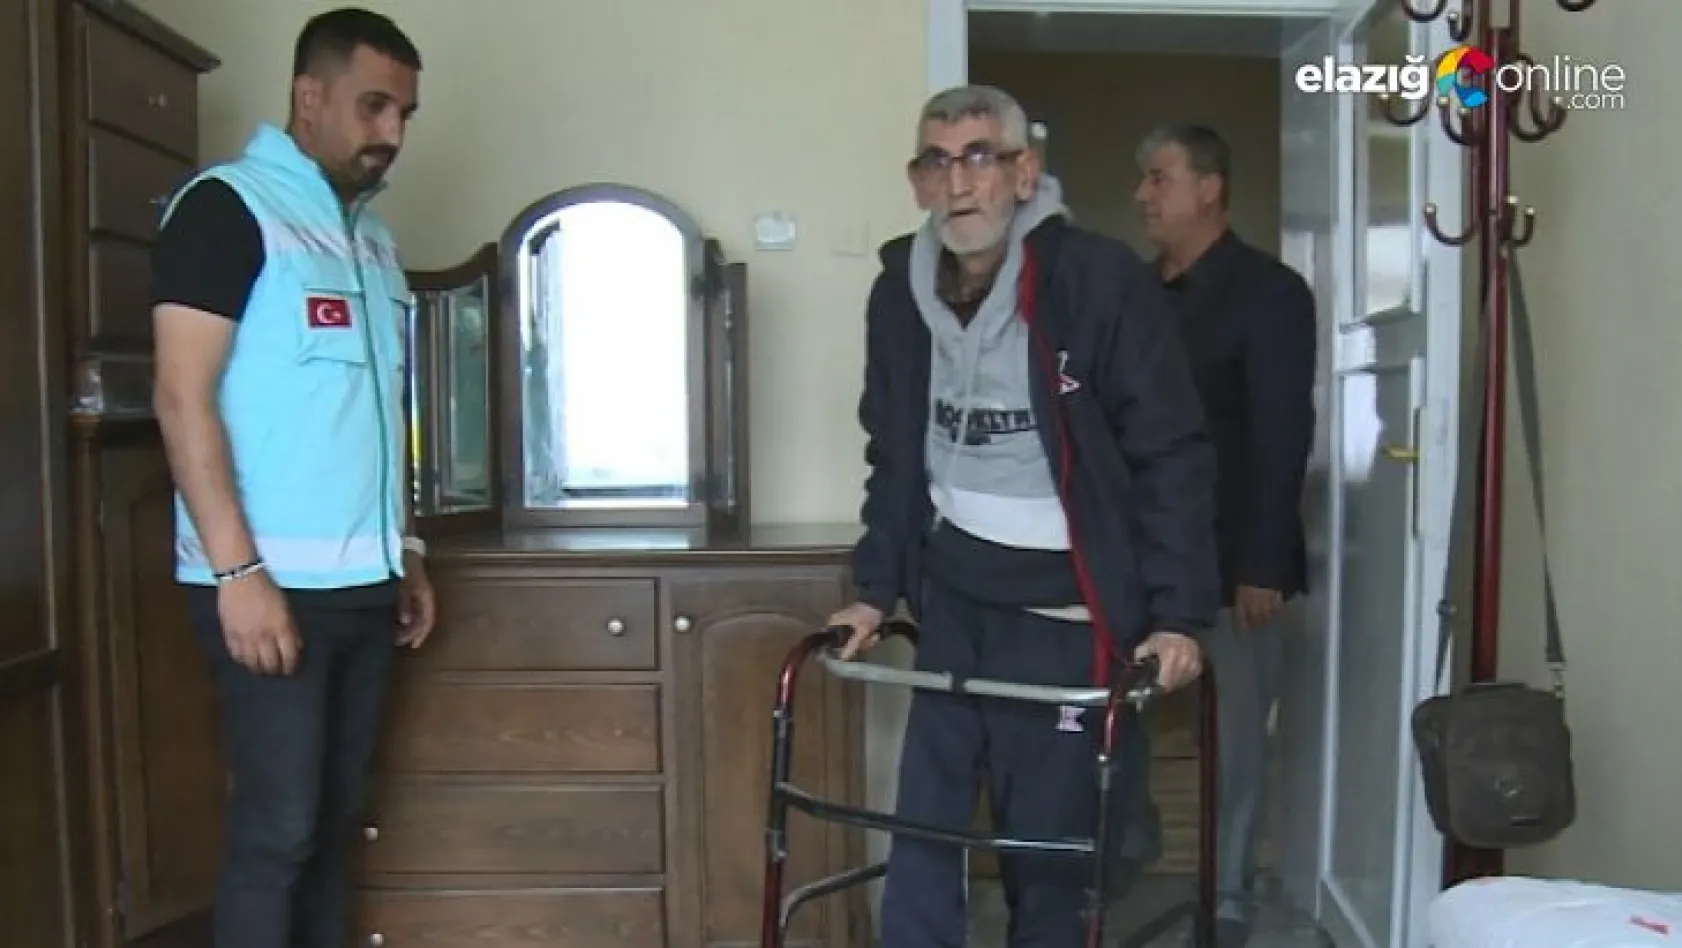 Elazığ Belediyesinden engelli vatandaşa anlamlı yardım